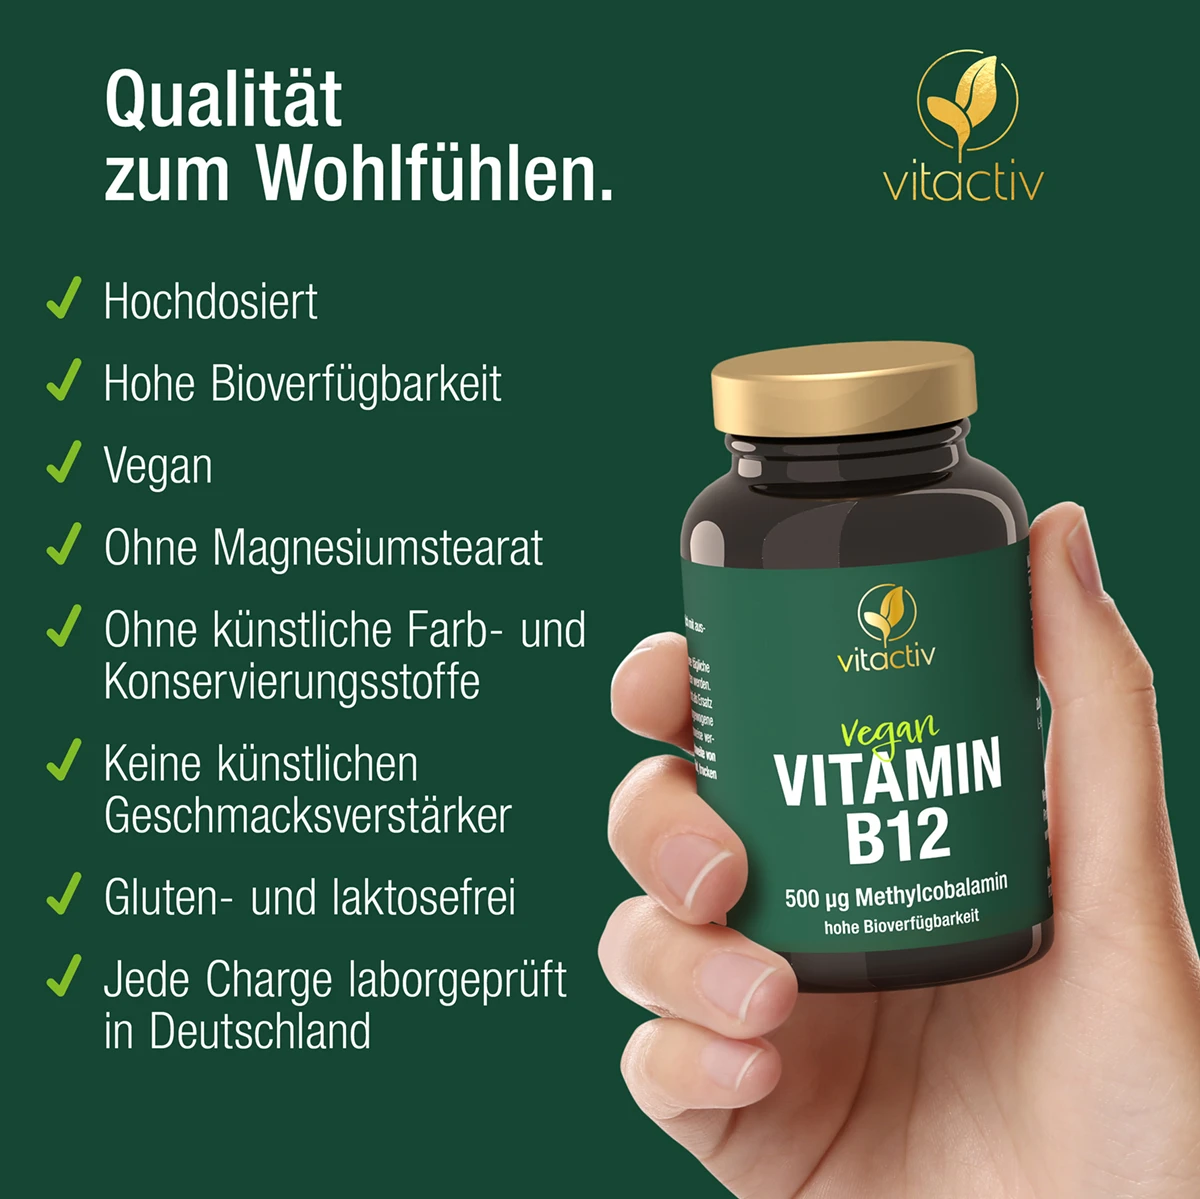 a830-vitamin-b12-19158643-06-1200px_1920x1920